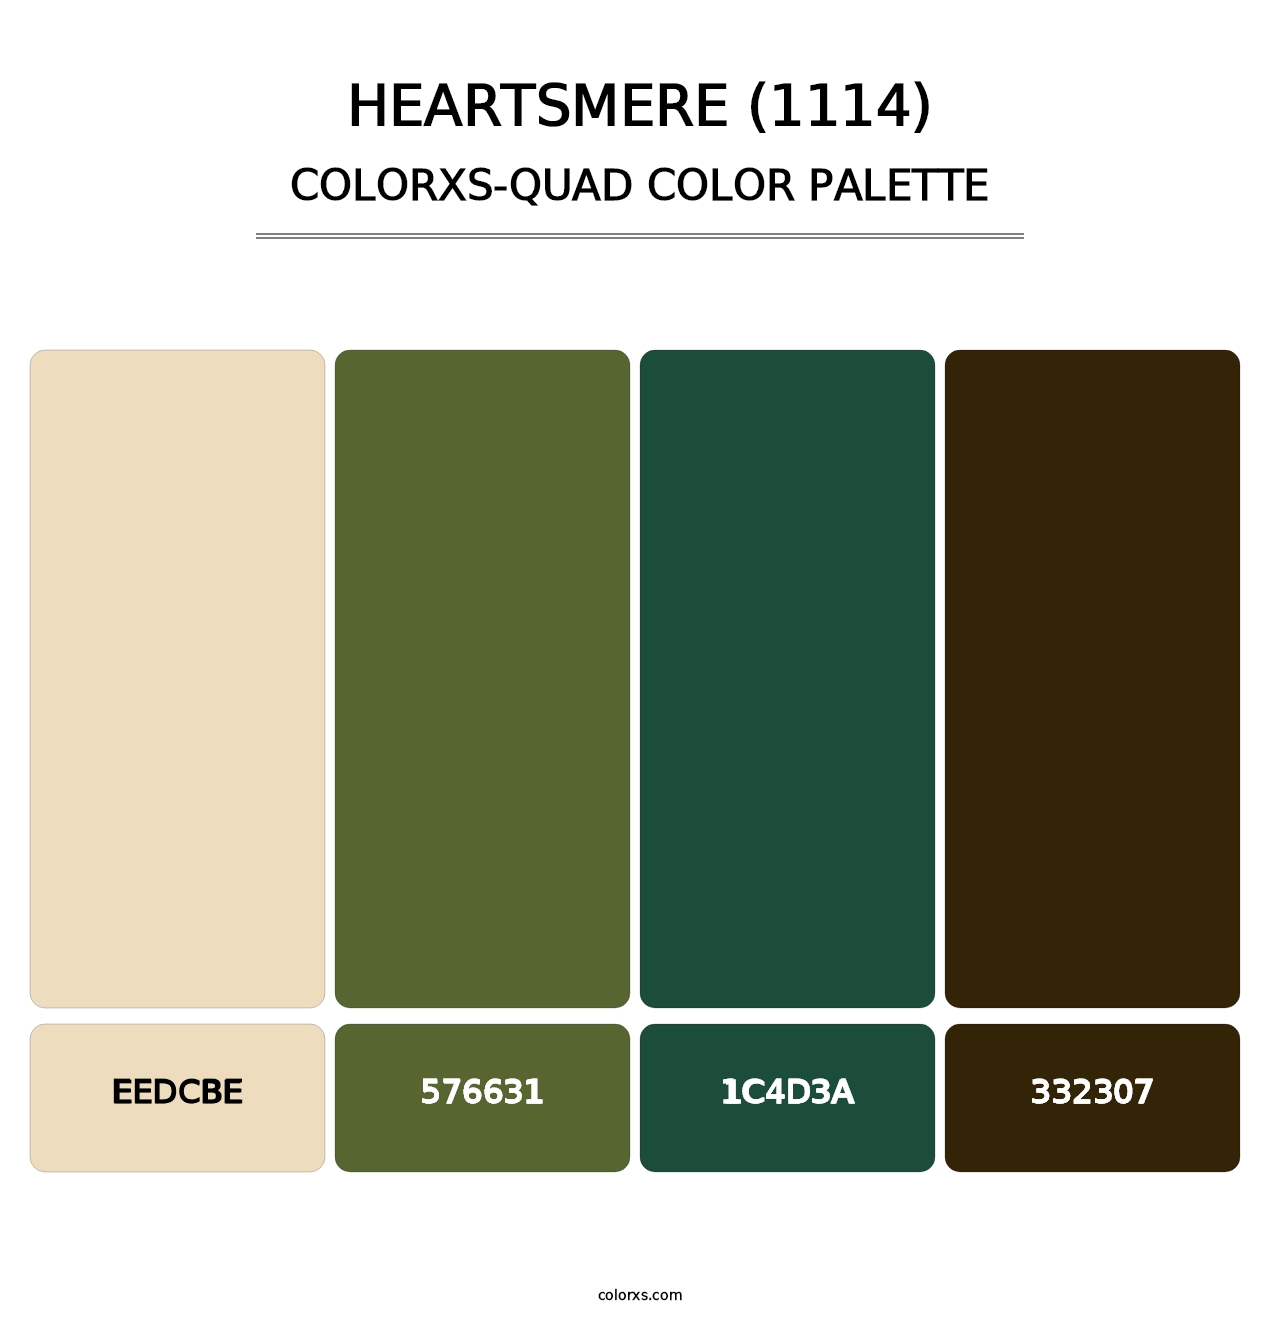 Heartsmere (1114) - Colorxs Quad Palette